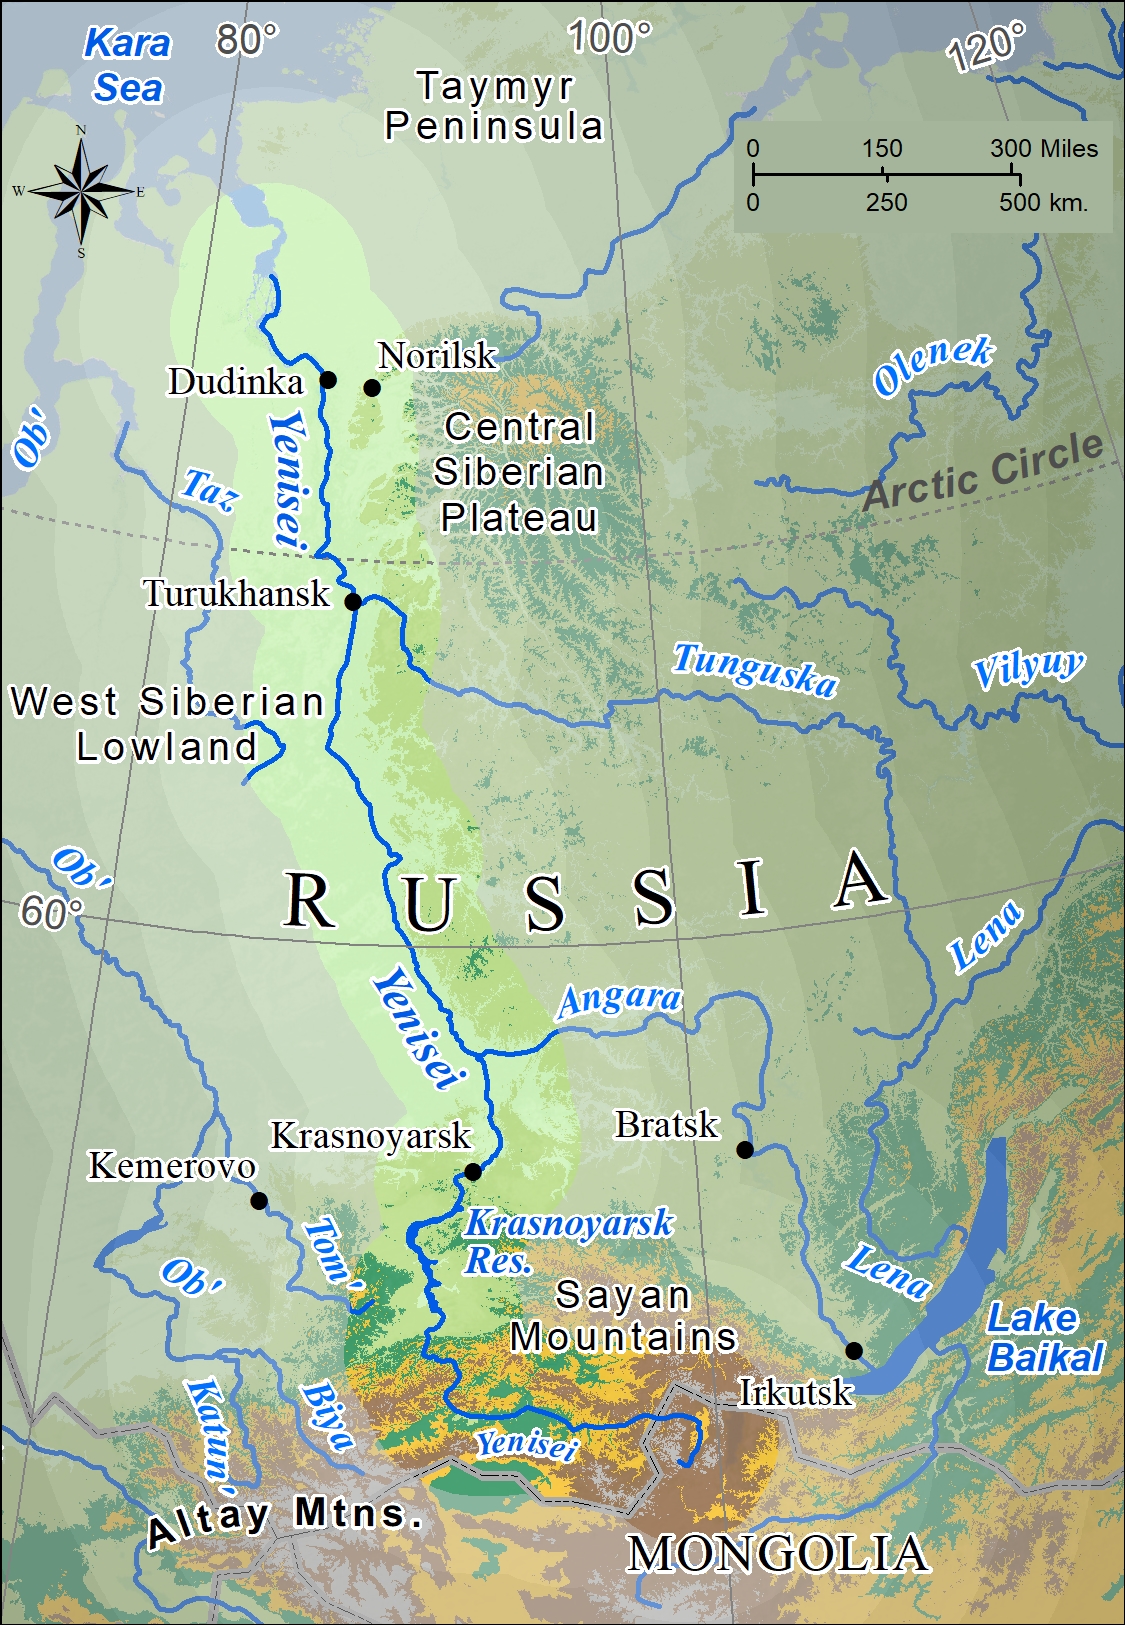 Ob River, Major Russian Waterway, Length & Tributaries